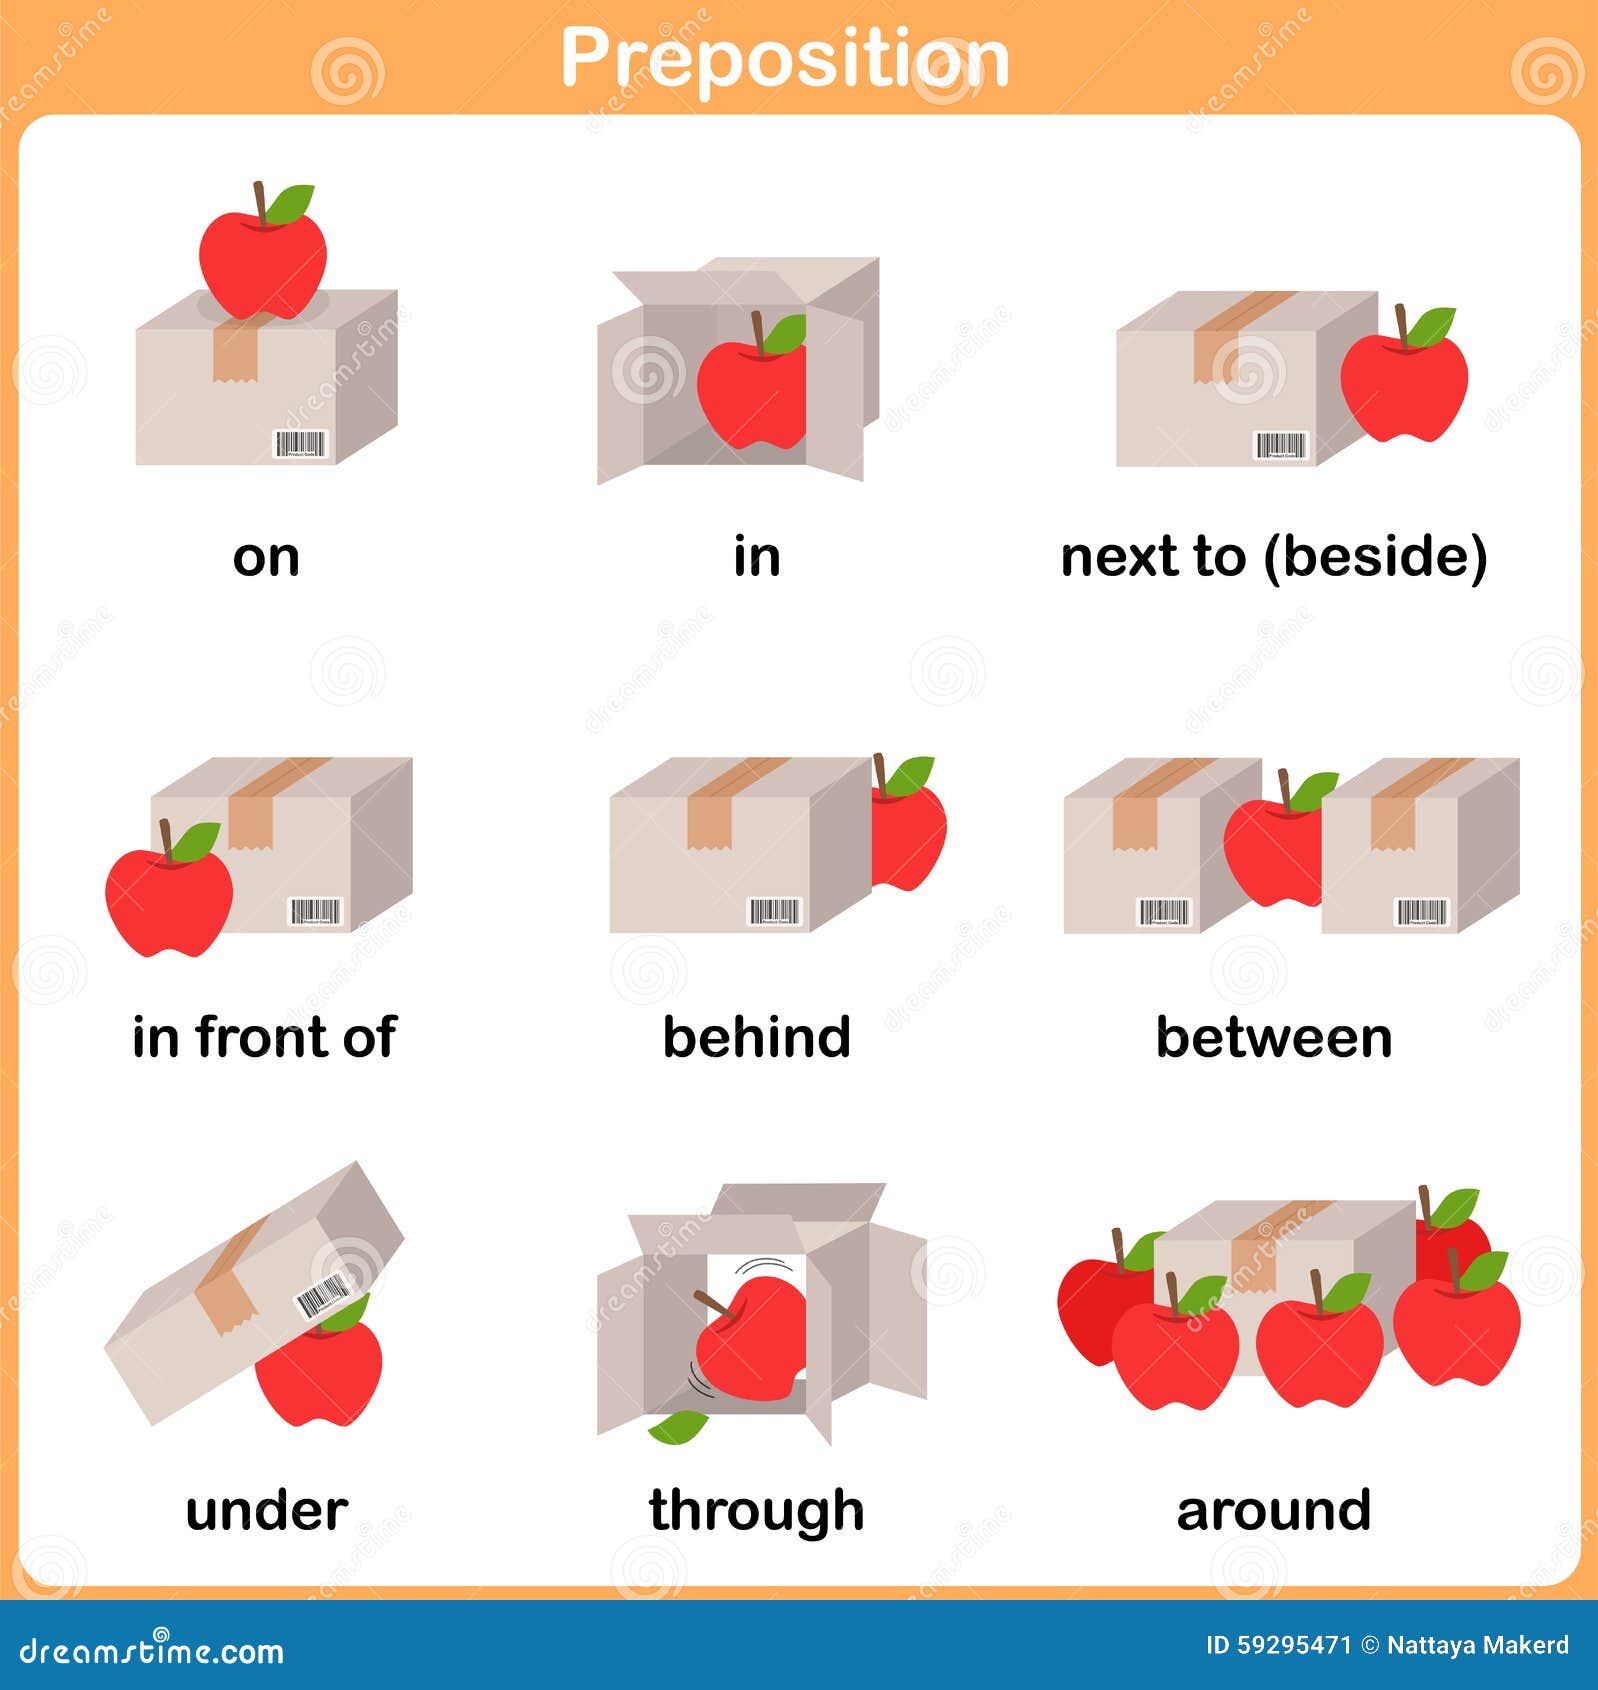 preposition of motion for preschool - worksheet for education